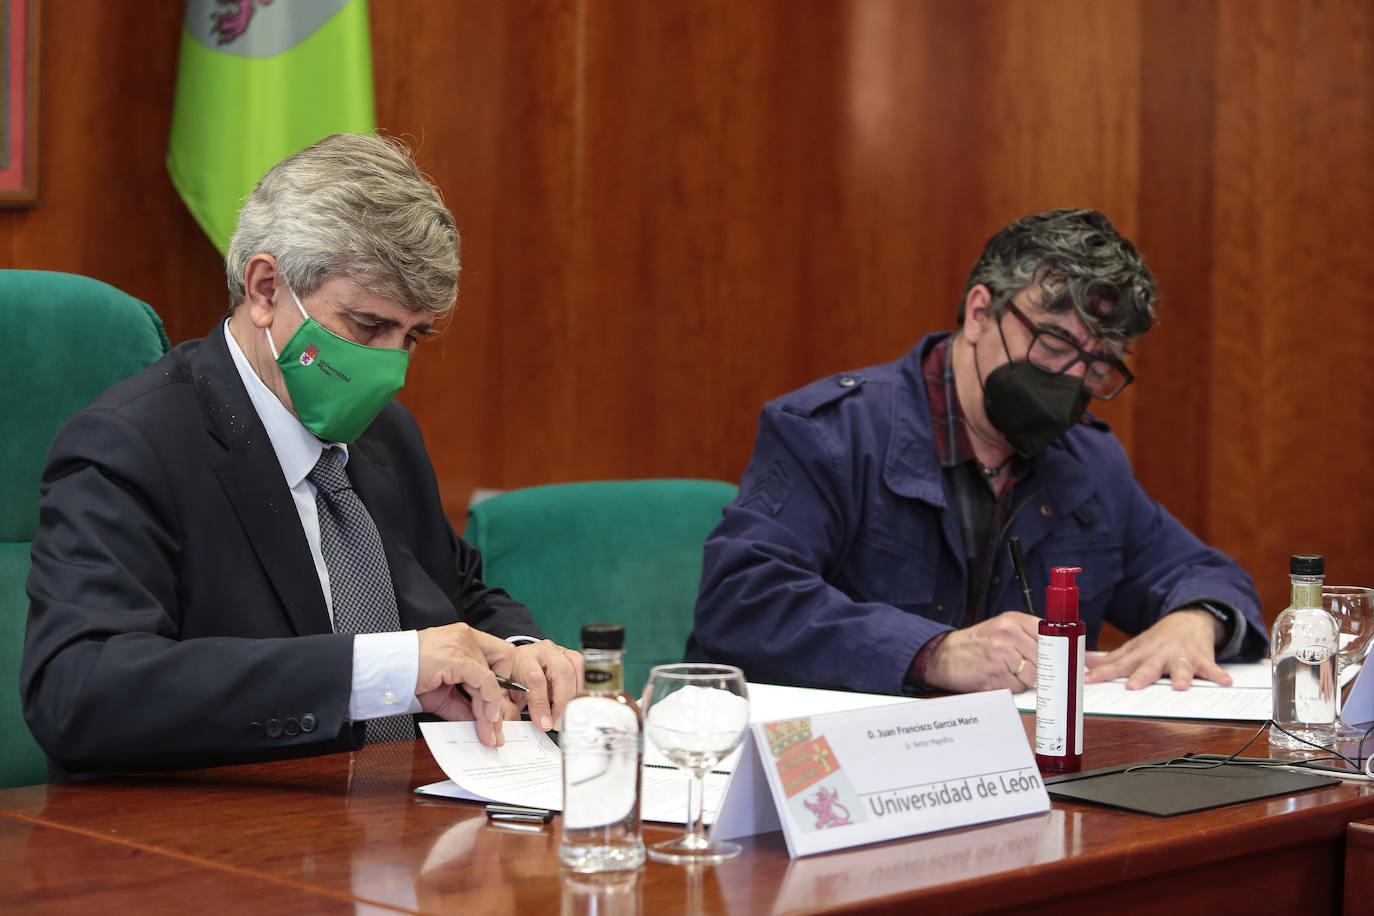 El rector de la Universidad de León, Juan Francisco García Marín, y el director gerente de la sede leonesa de Asprona León. Pedro Barrio Santos, firman un convenio de colaboración entre ambas entidades.